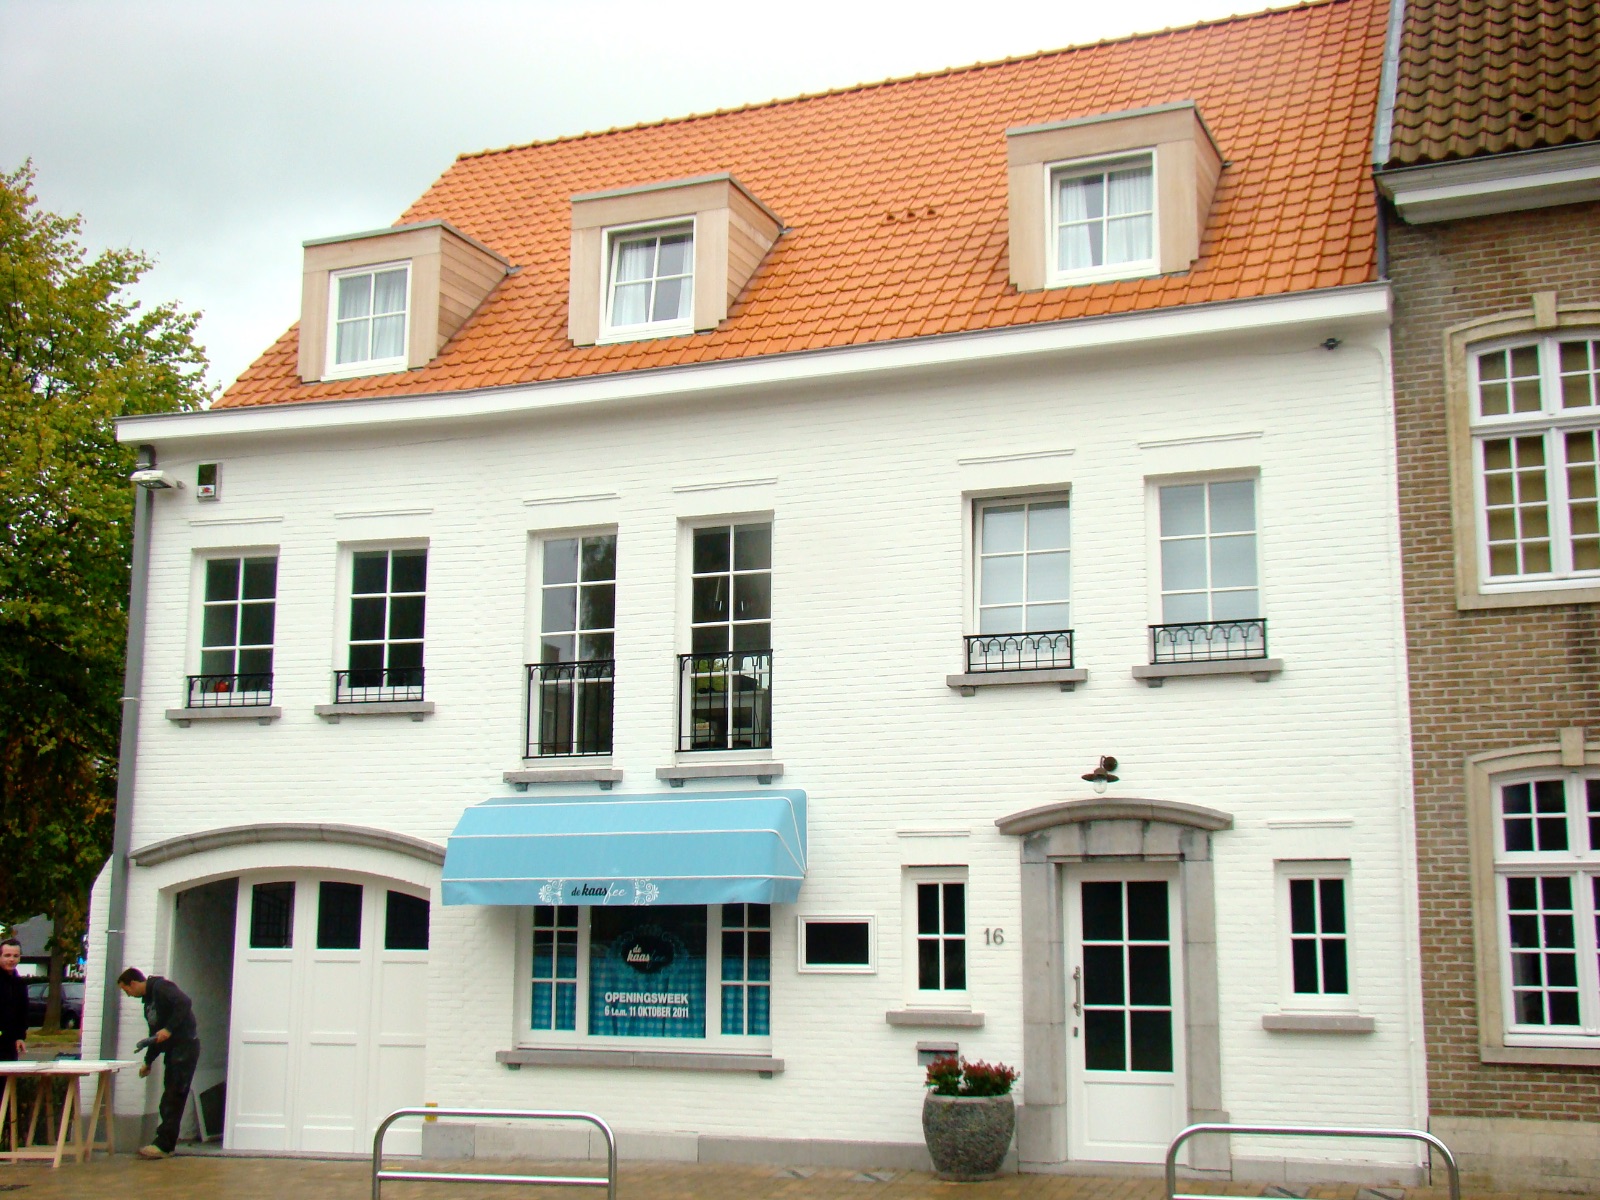 Gerenoveerde handelszaak, voorgevel van wit gebouw met twee verdiepingen en een rood dak, realisatie van Plan Architectenbureau Brugge